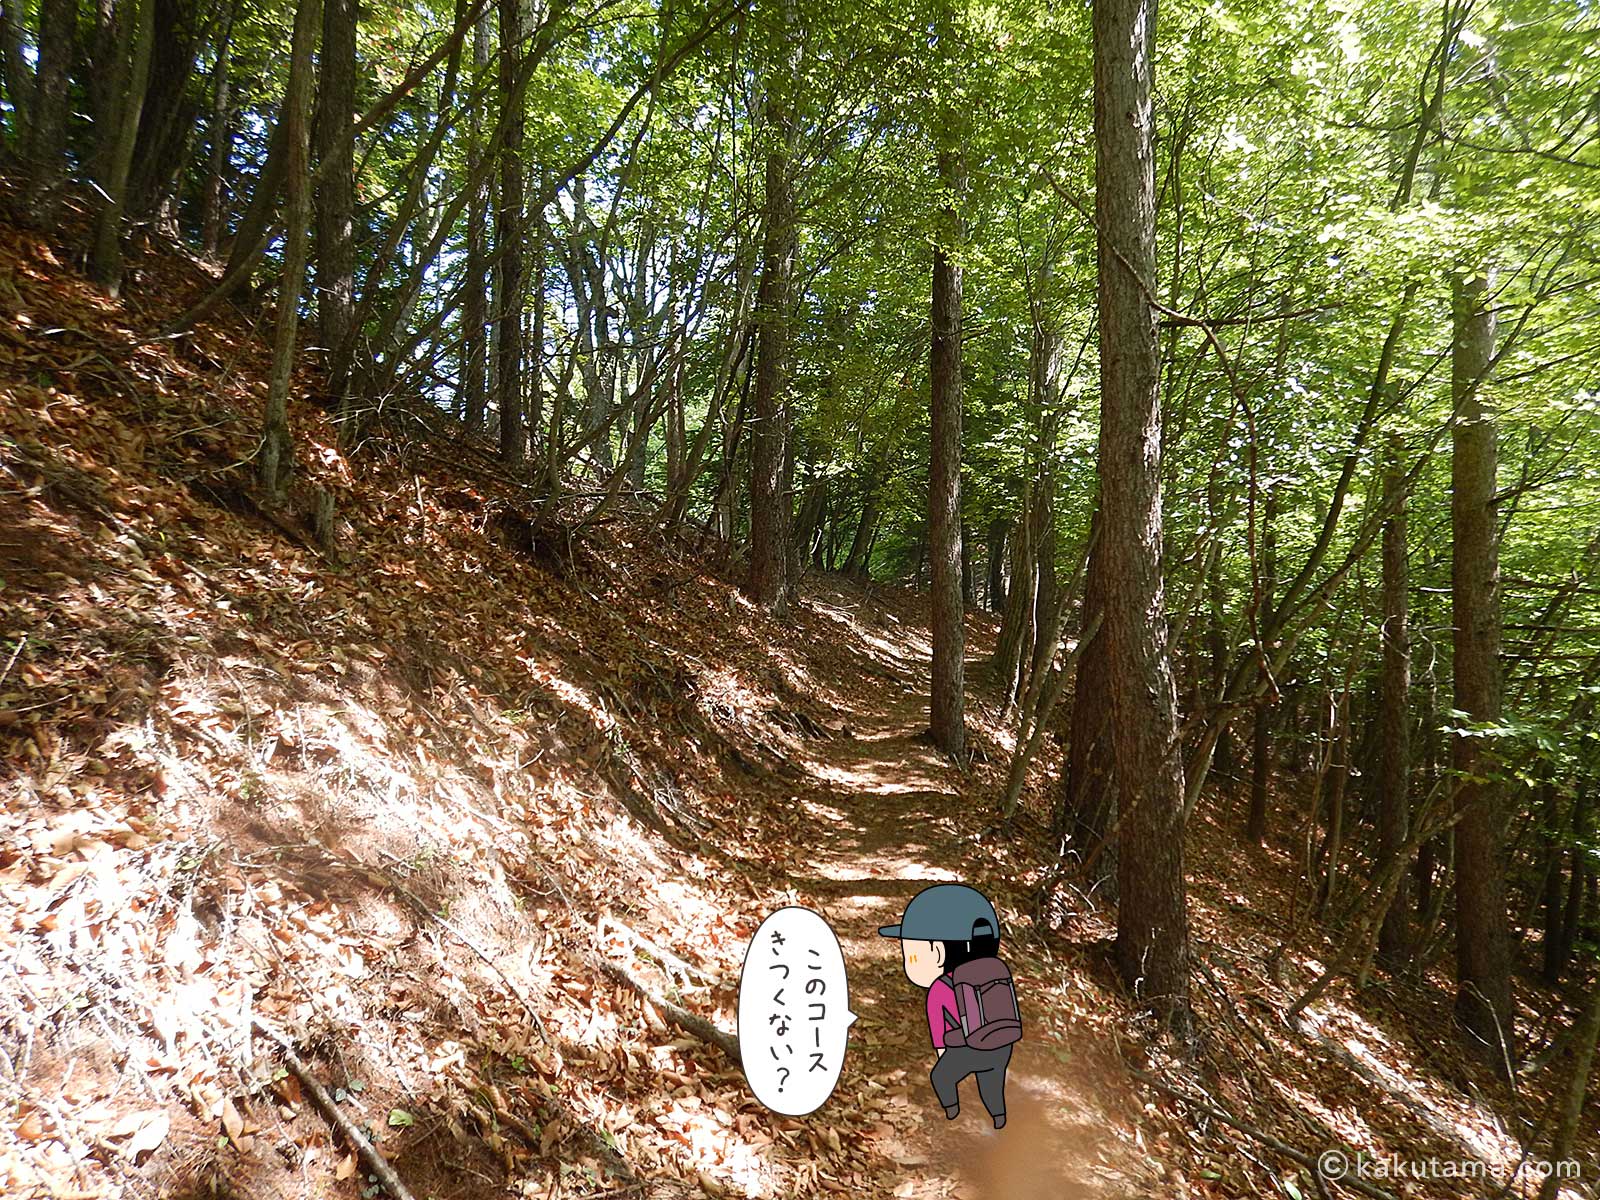 丸川峠から丸川荘へ向かって登る11